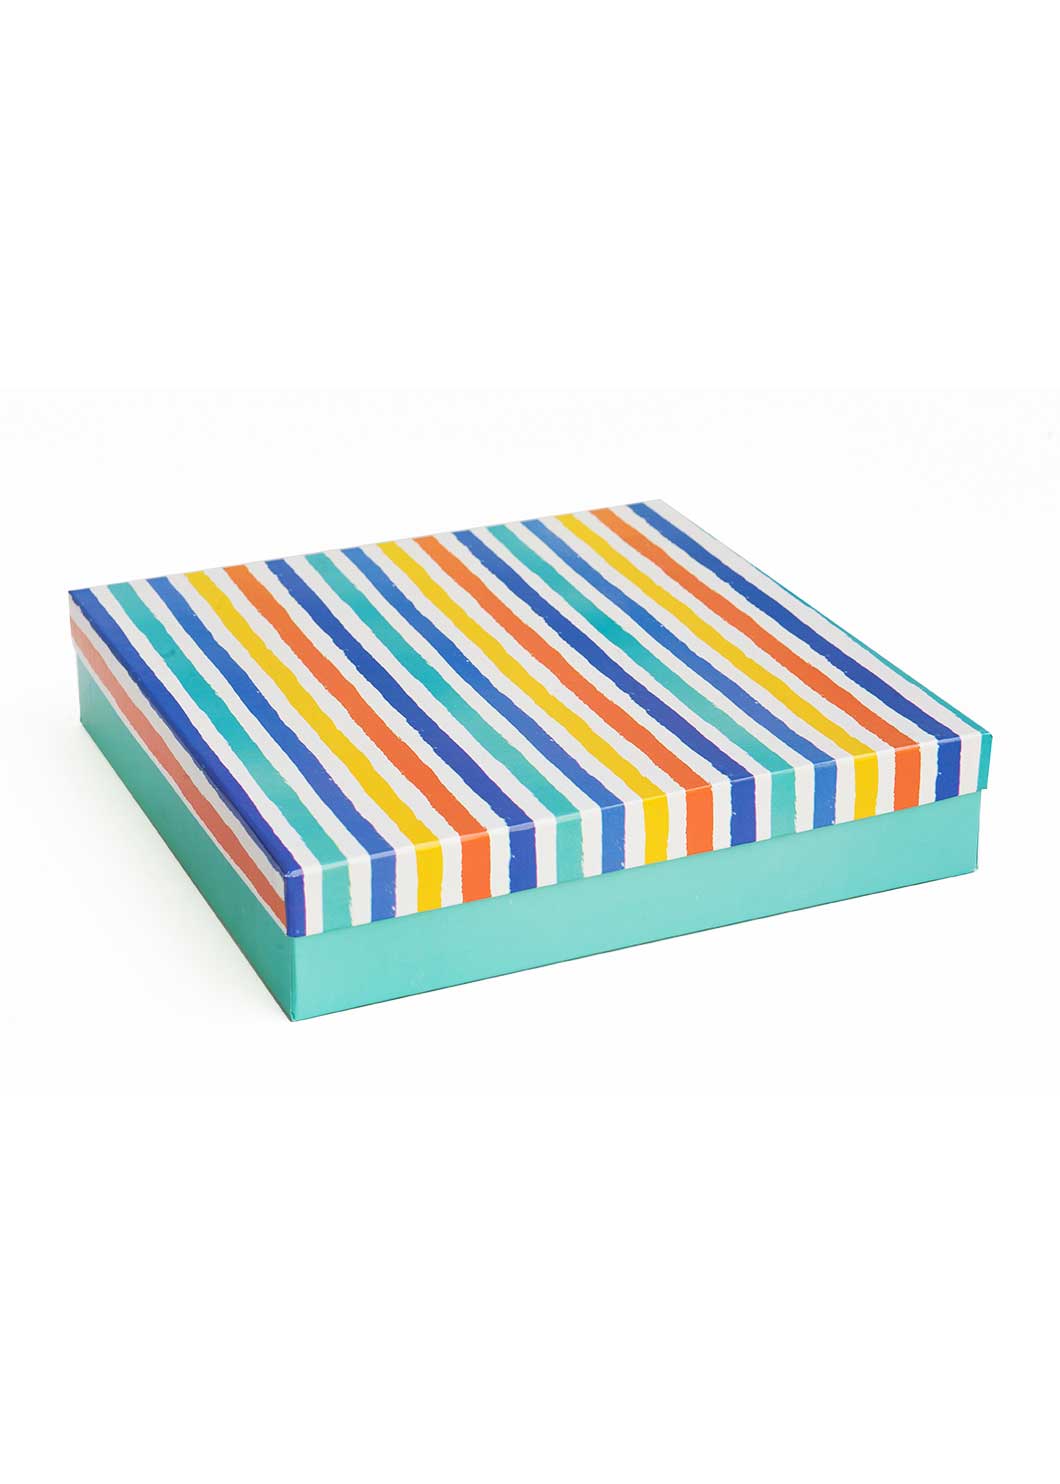 Blue Yello Orange Stripes Empty Box - Blue Yello Orange Stripes Box For Clothe Packaging - Empty Designed Box